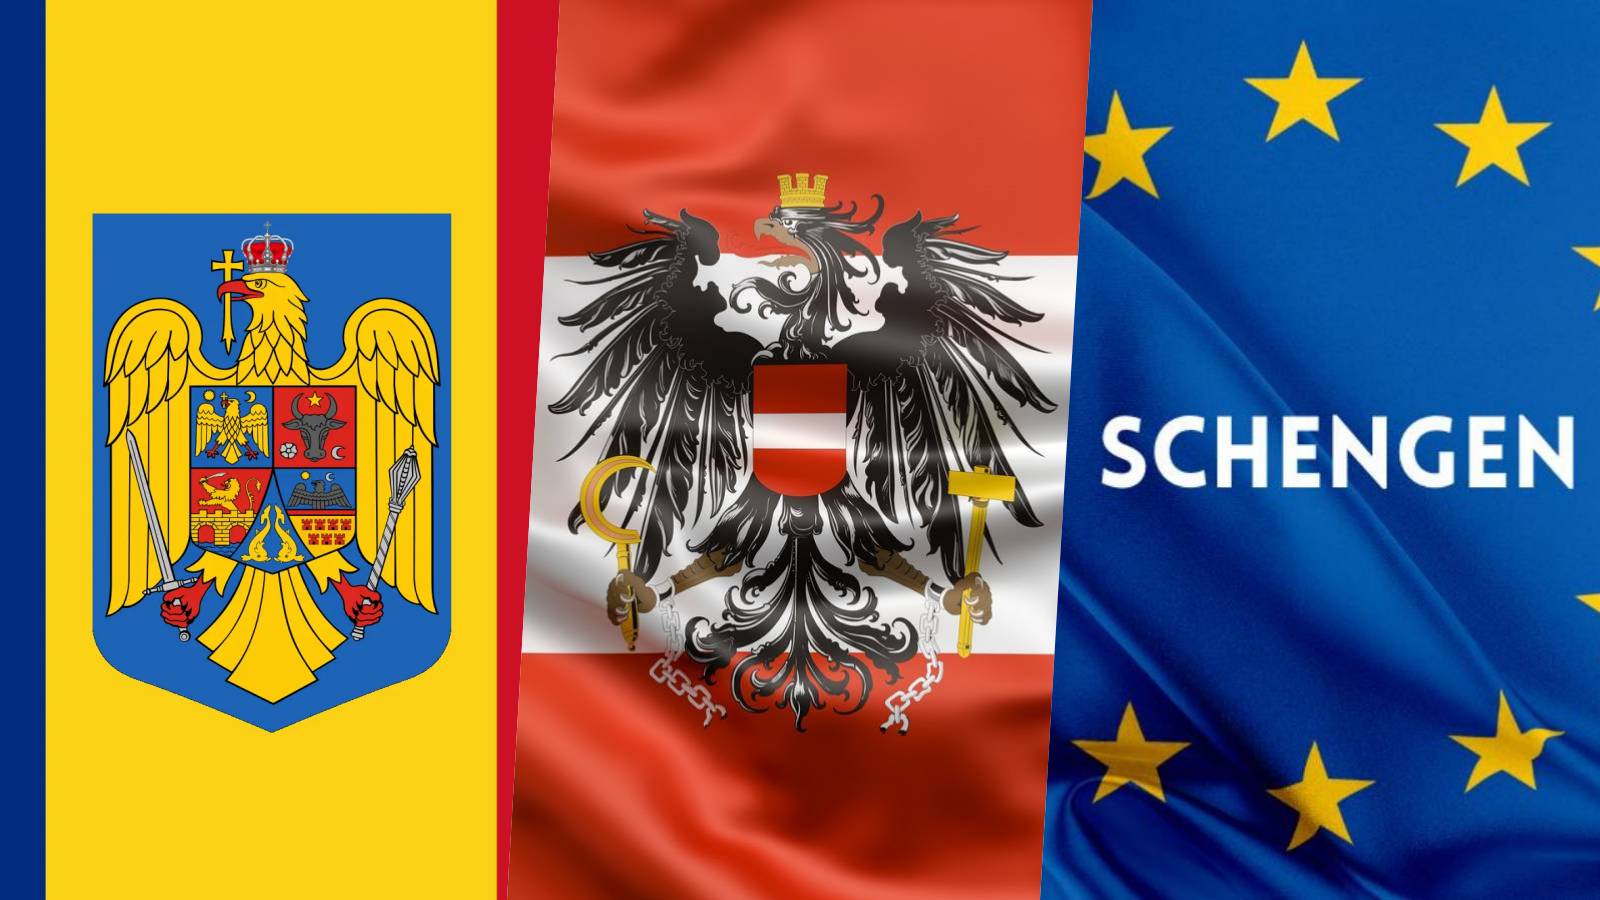 Schengen Vigtig officiel meddelelse I LAST MINUTE MAJ Når Rumænien tiltræder